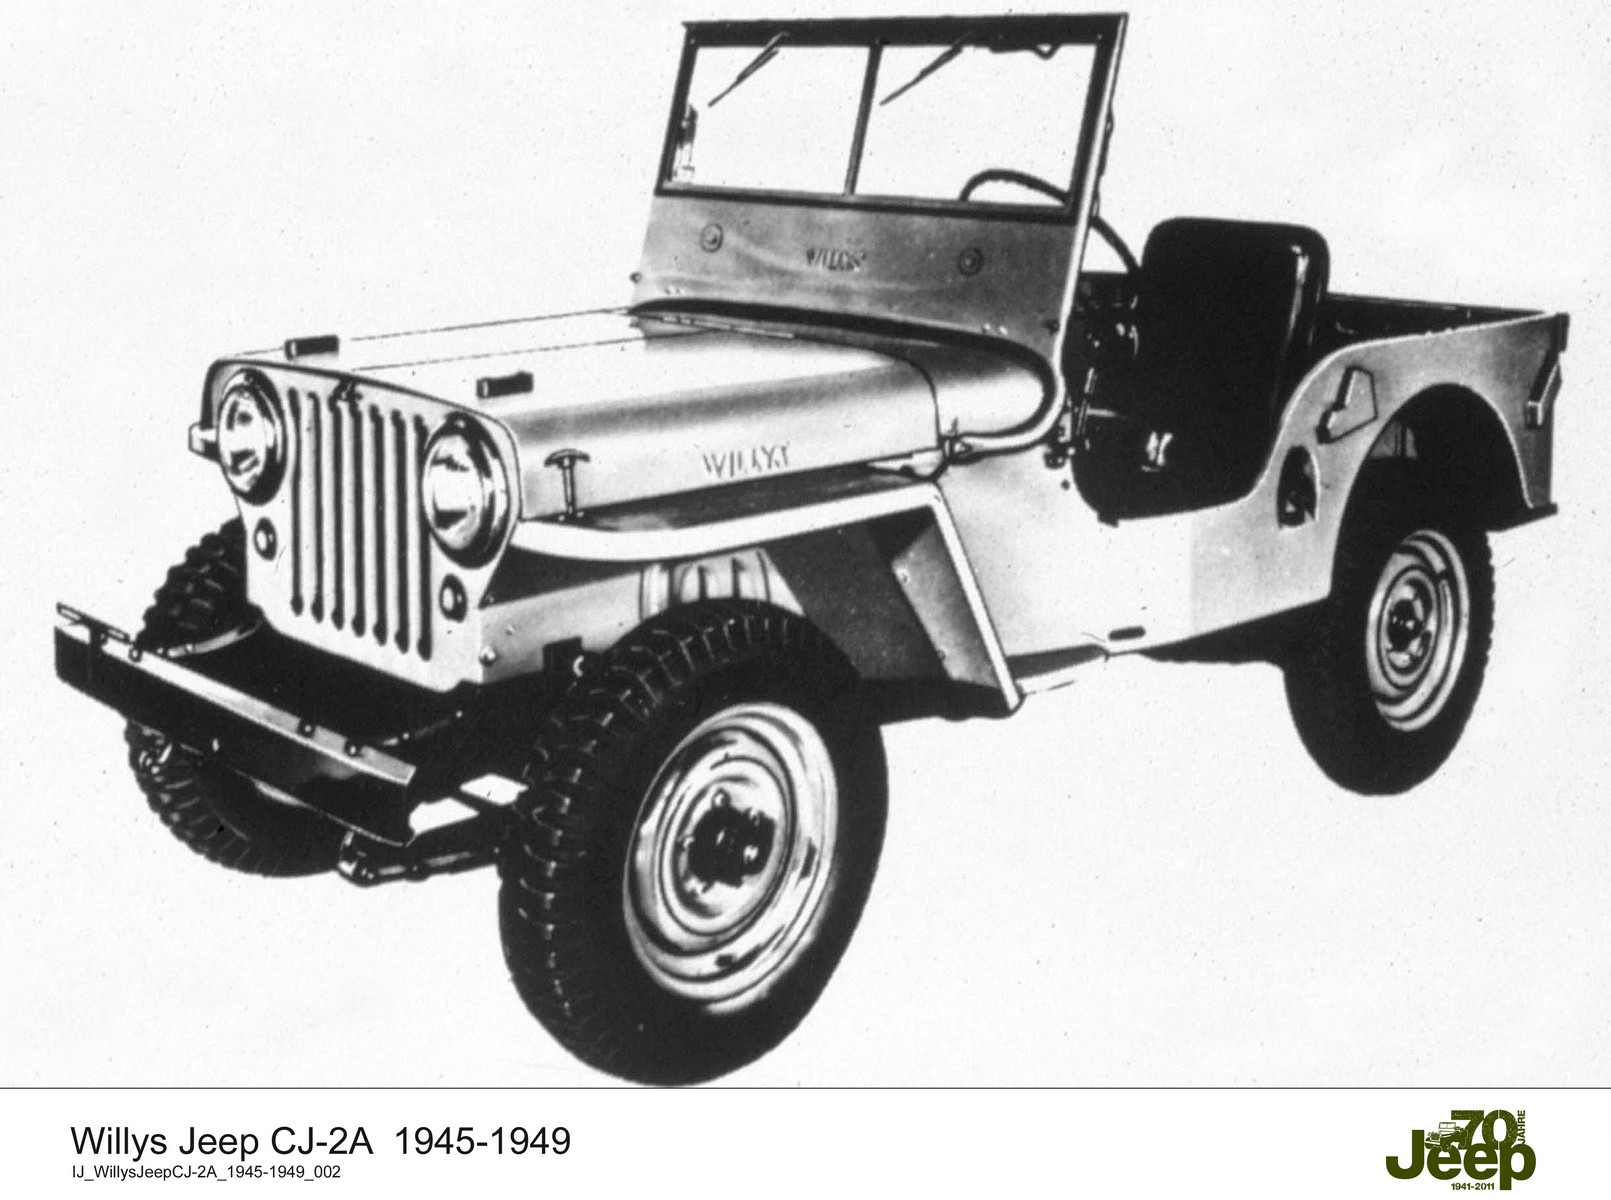 Willys Jeep CJ-2A